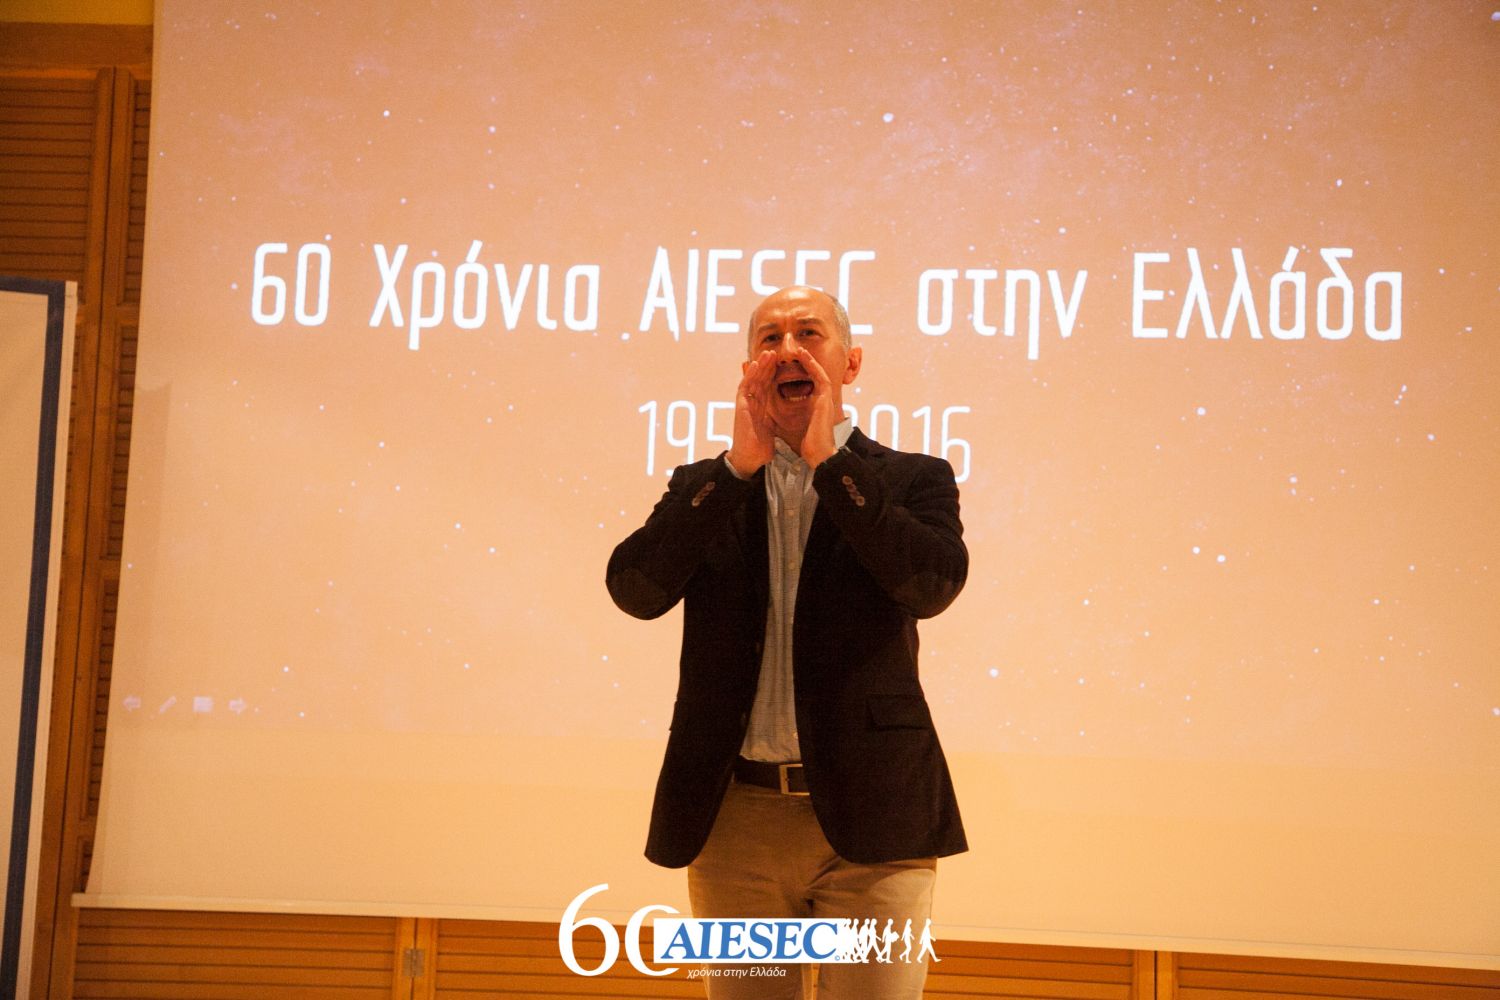 60 χρόνια AIESEC Ελλάδος